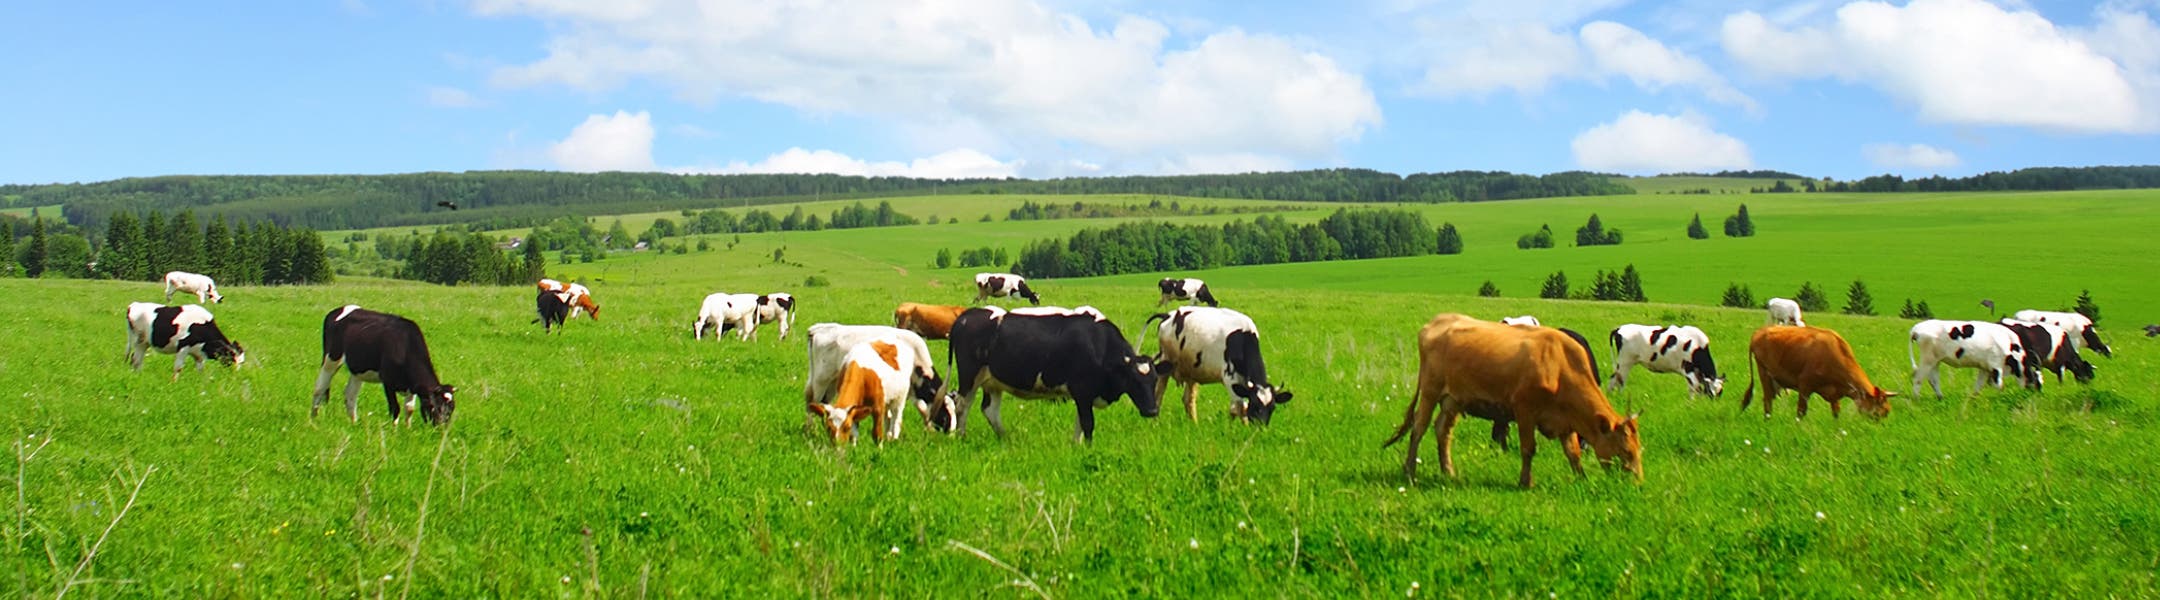 Коровы гуляют на пастбище с зелёной травой